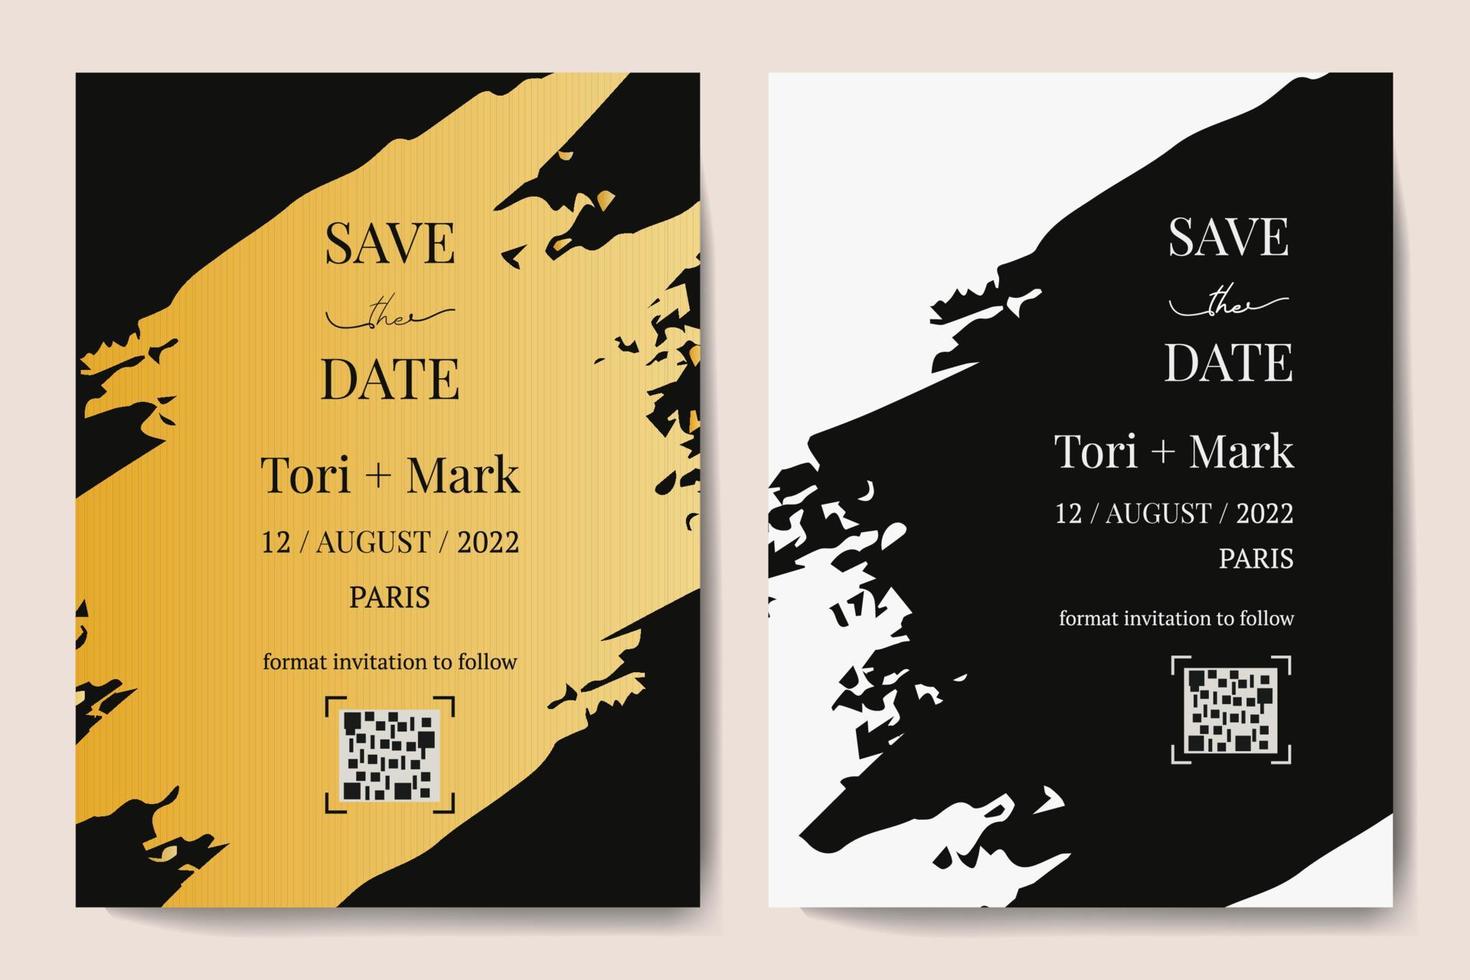 biglietti d'invito a nozze verticali vettoriali con texture nera e oro su sfondo scuro. design esotico di lusso per la cerimonia di nozze